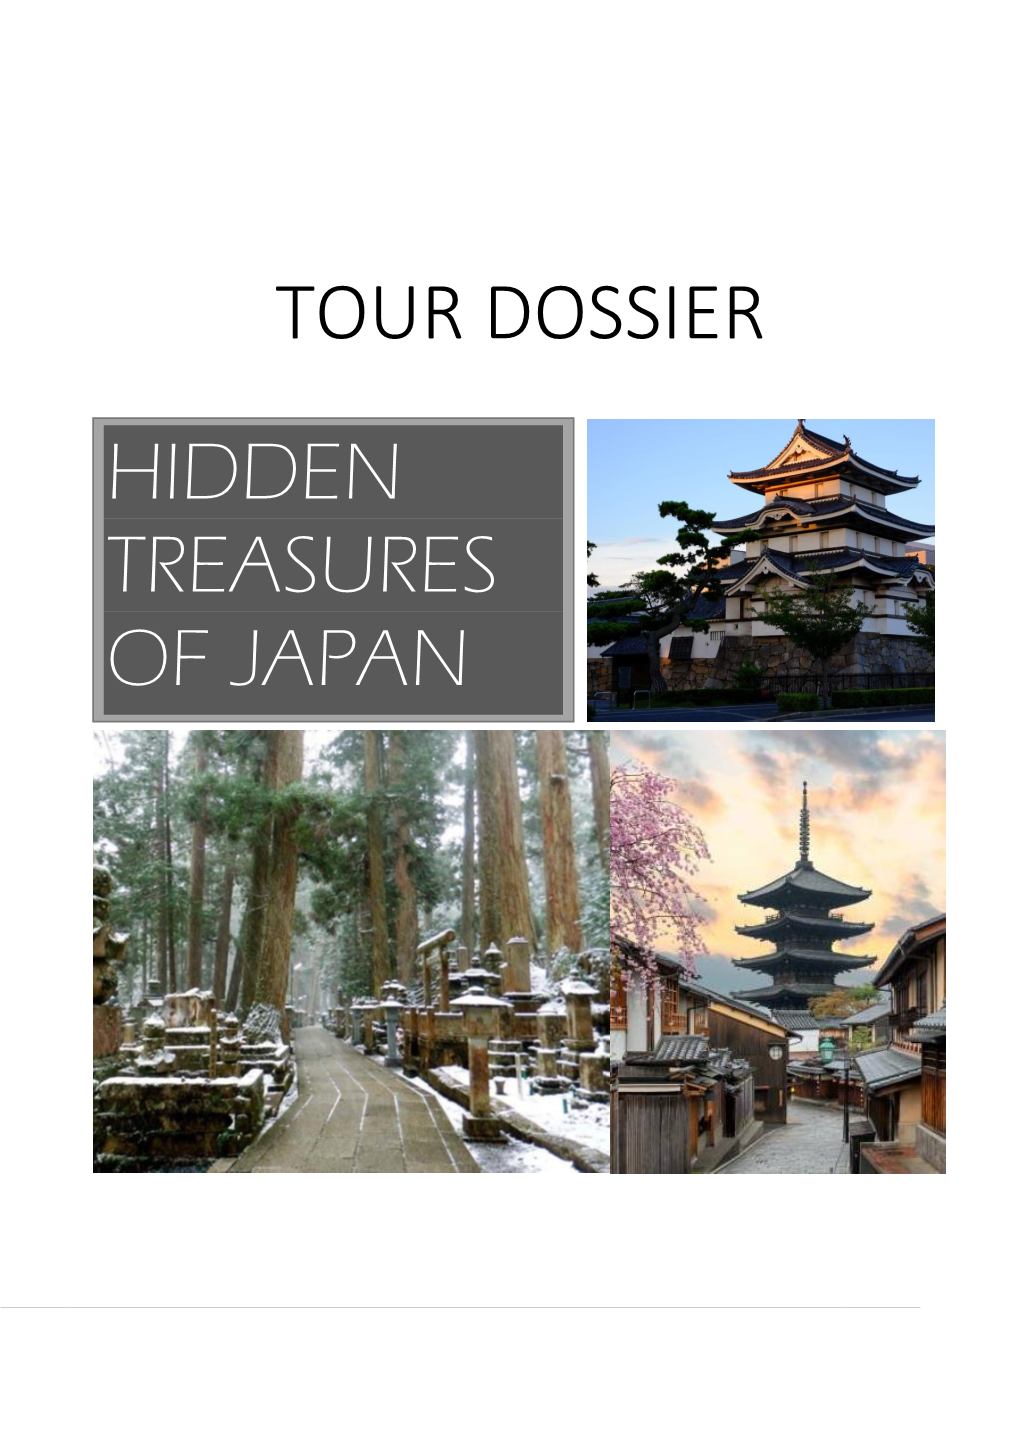 Tour Dossier Hidden Treasures of Japan